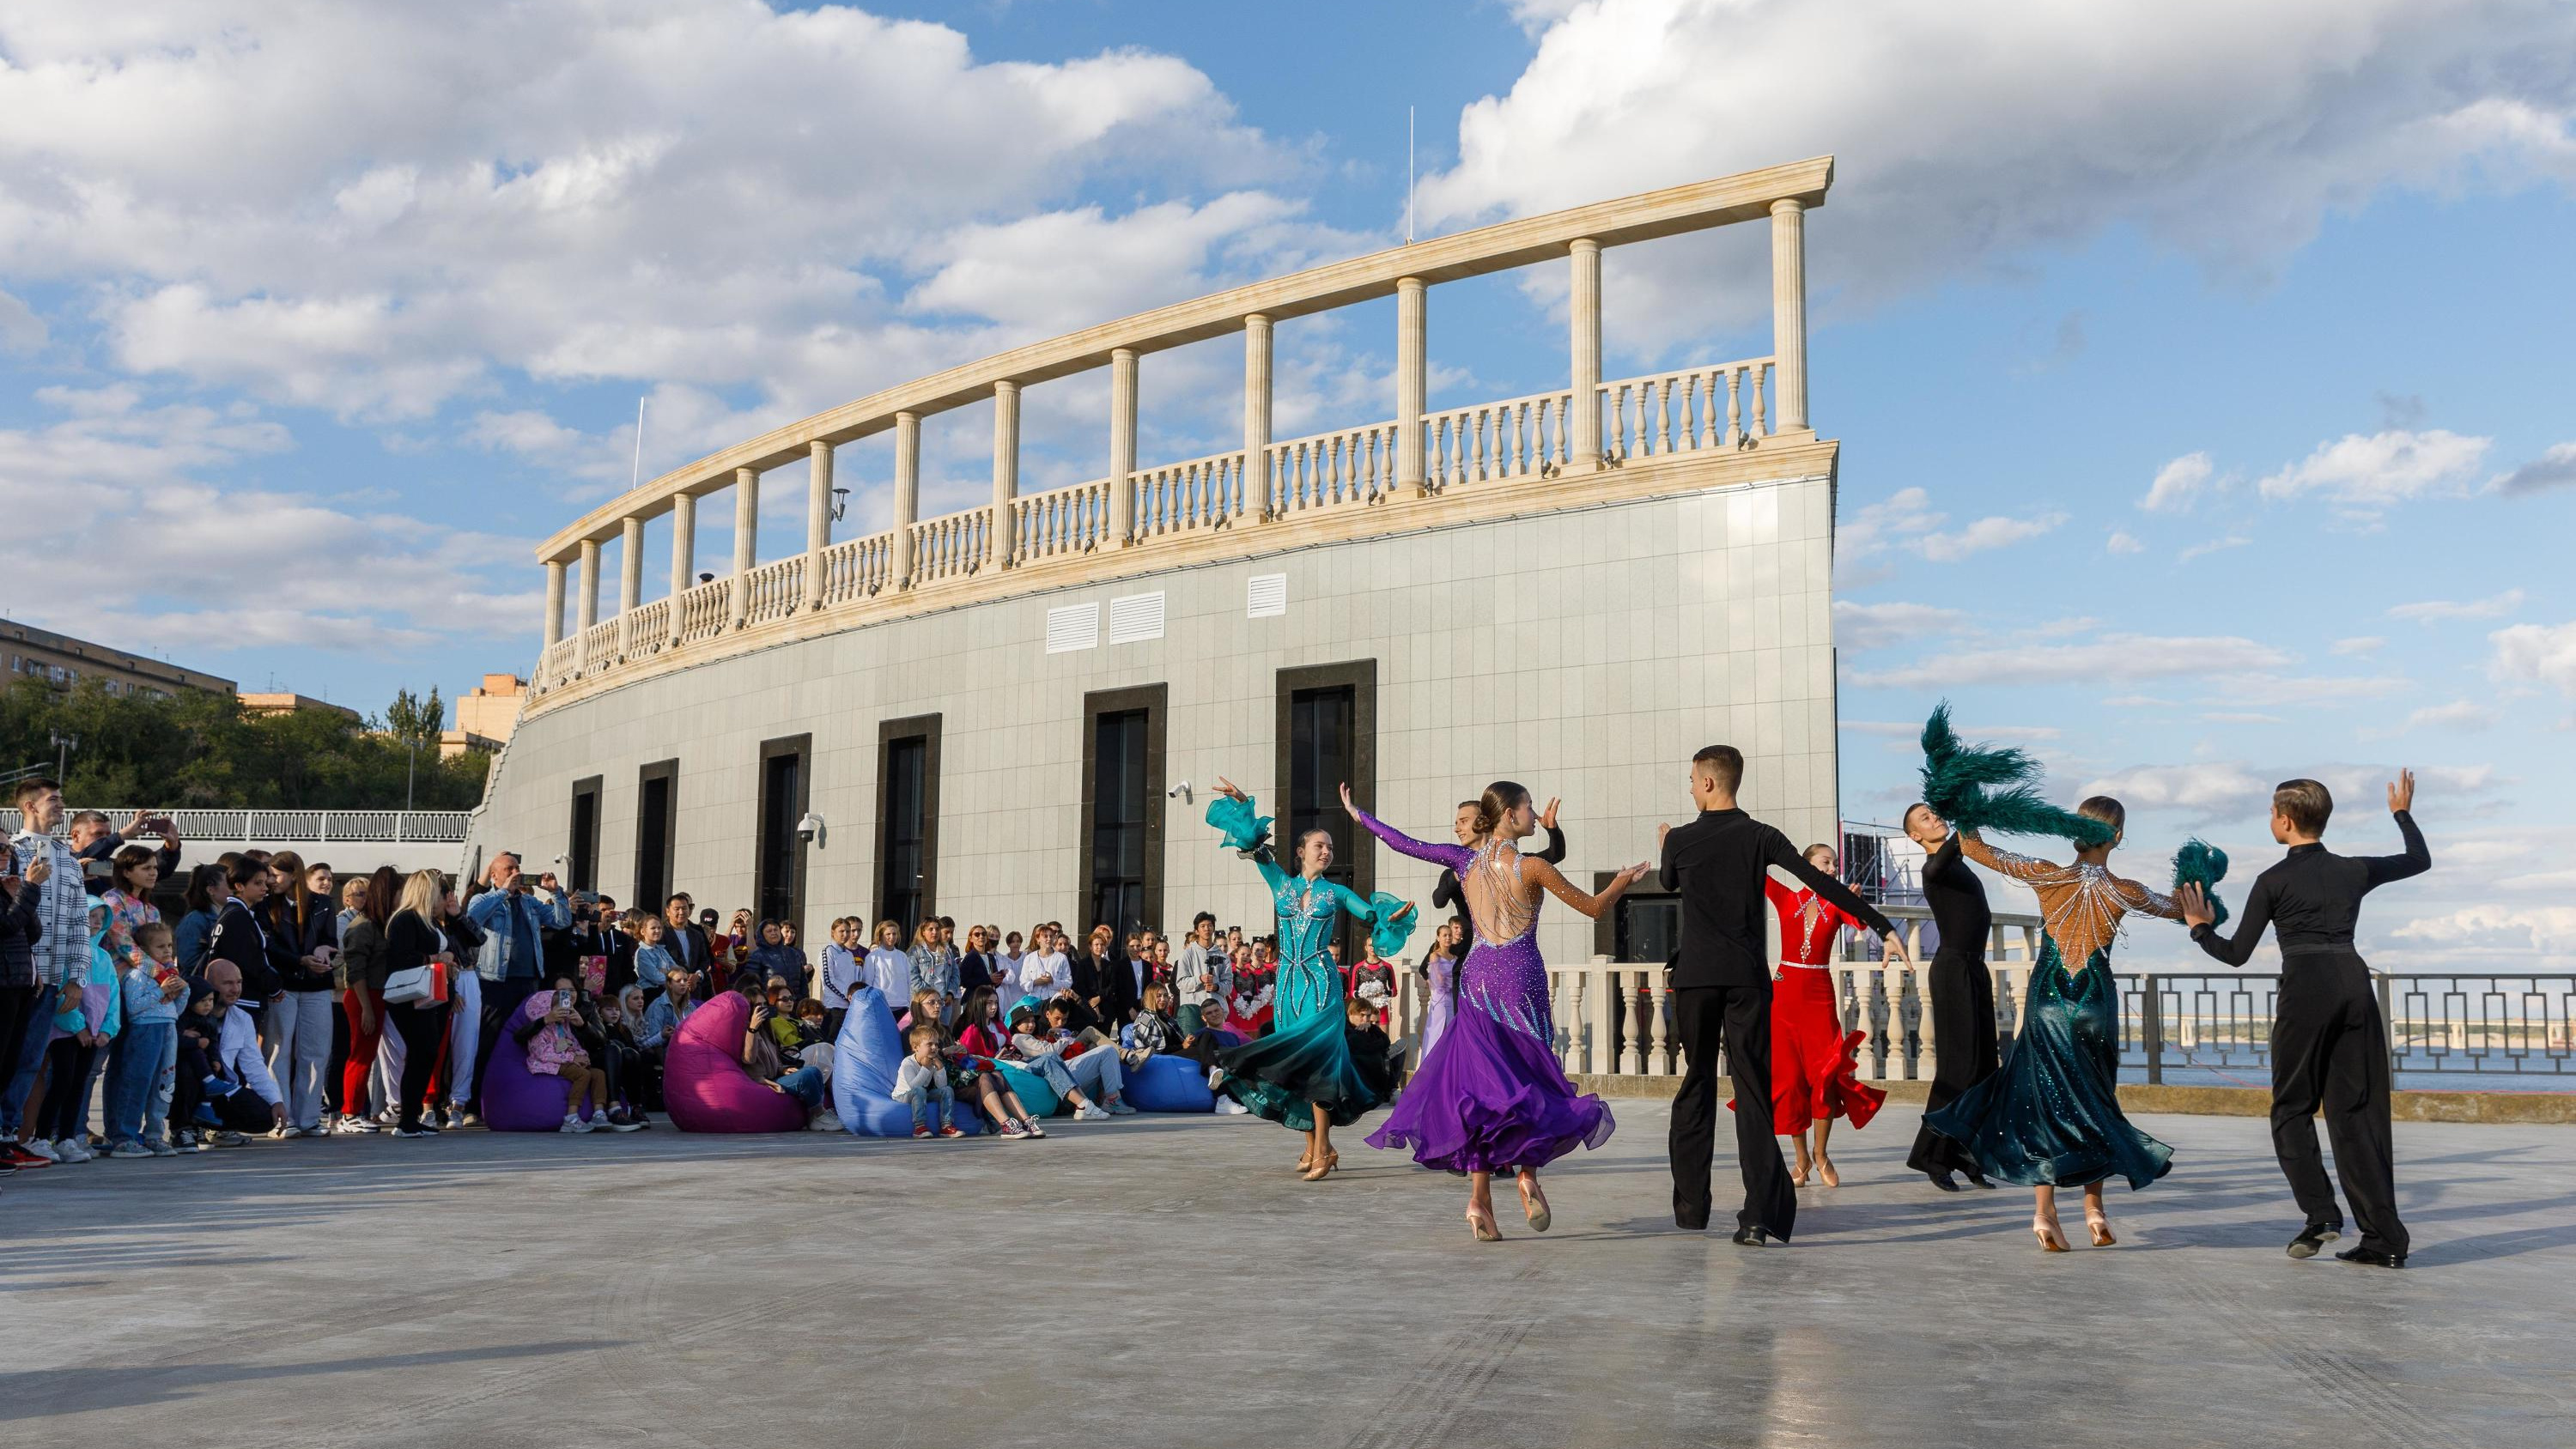 В Волгограде за сутки до начала отменили региональный фестиваль уличных танцев